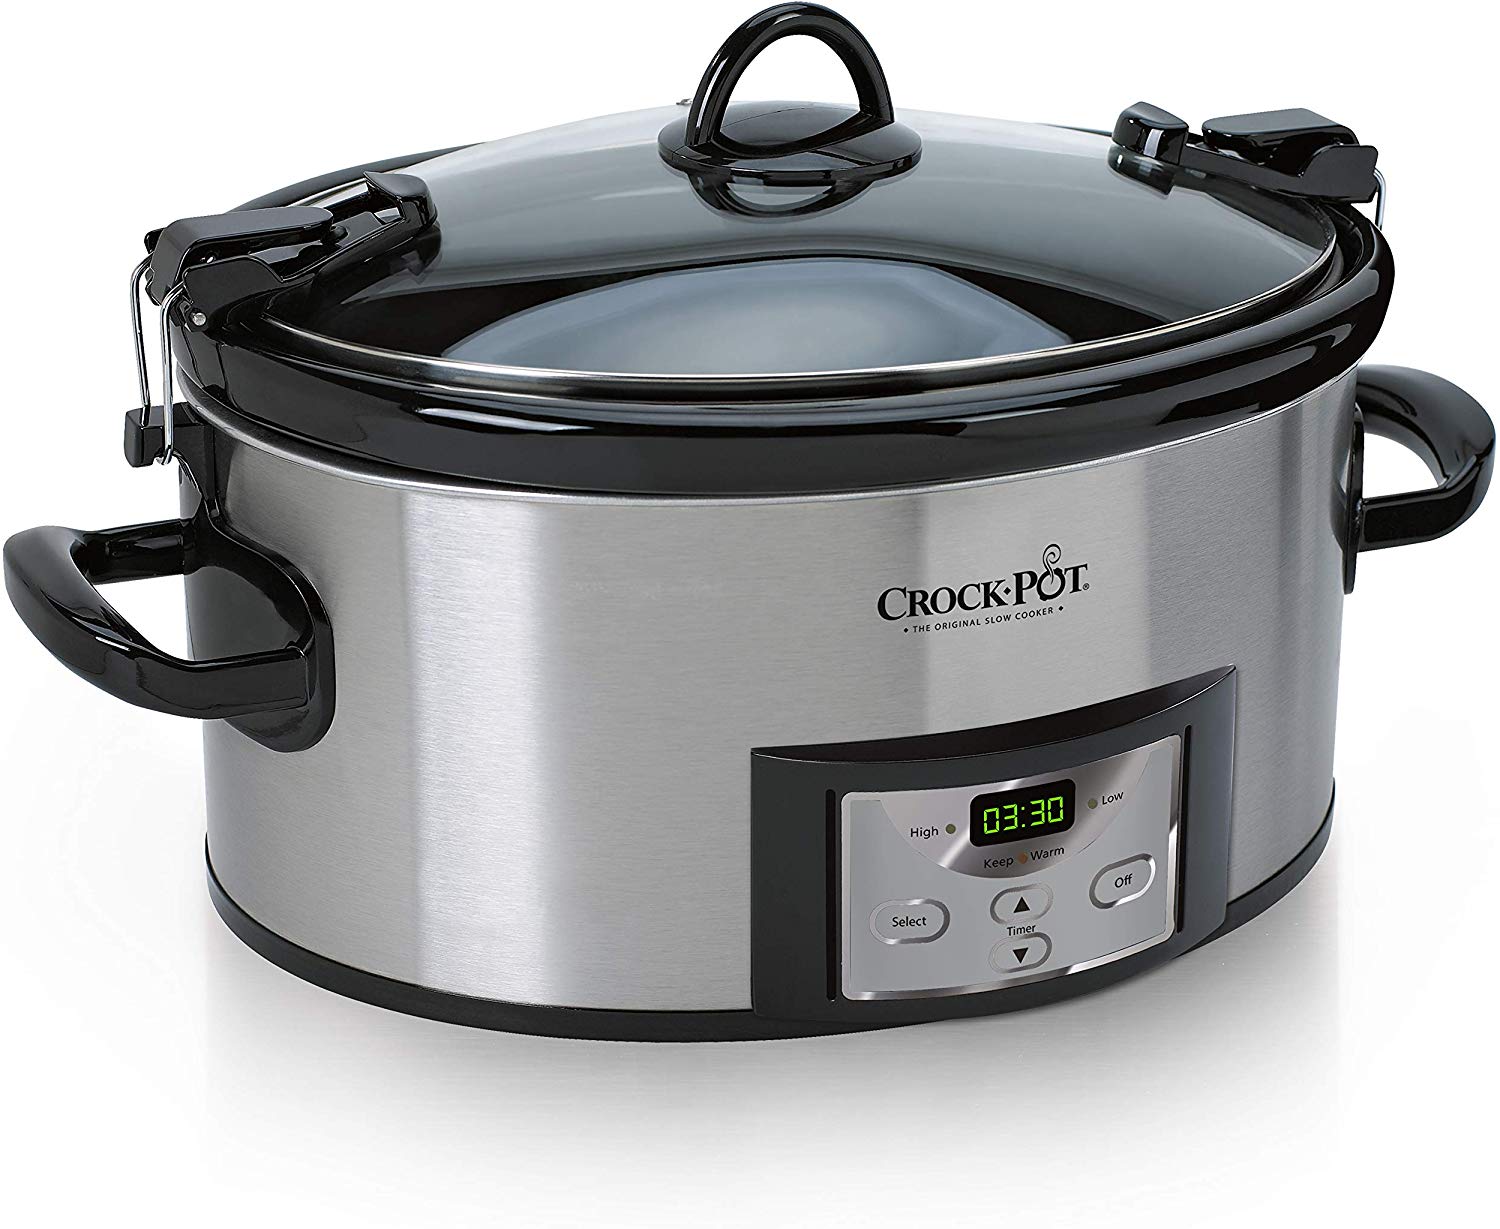  Crock Pot  SCCPVL610 S A 6 Quart Cook Carry Programmable 